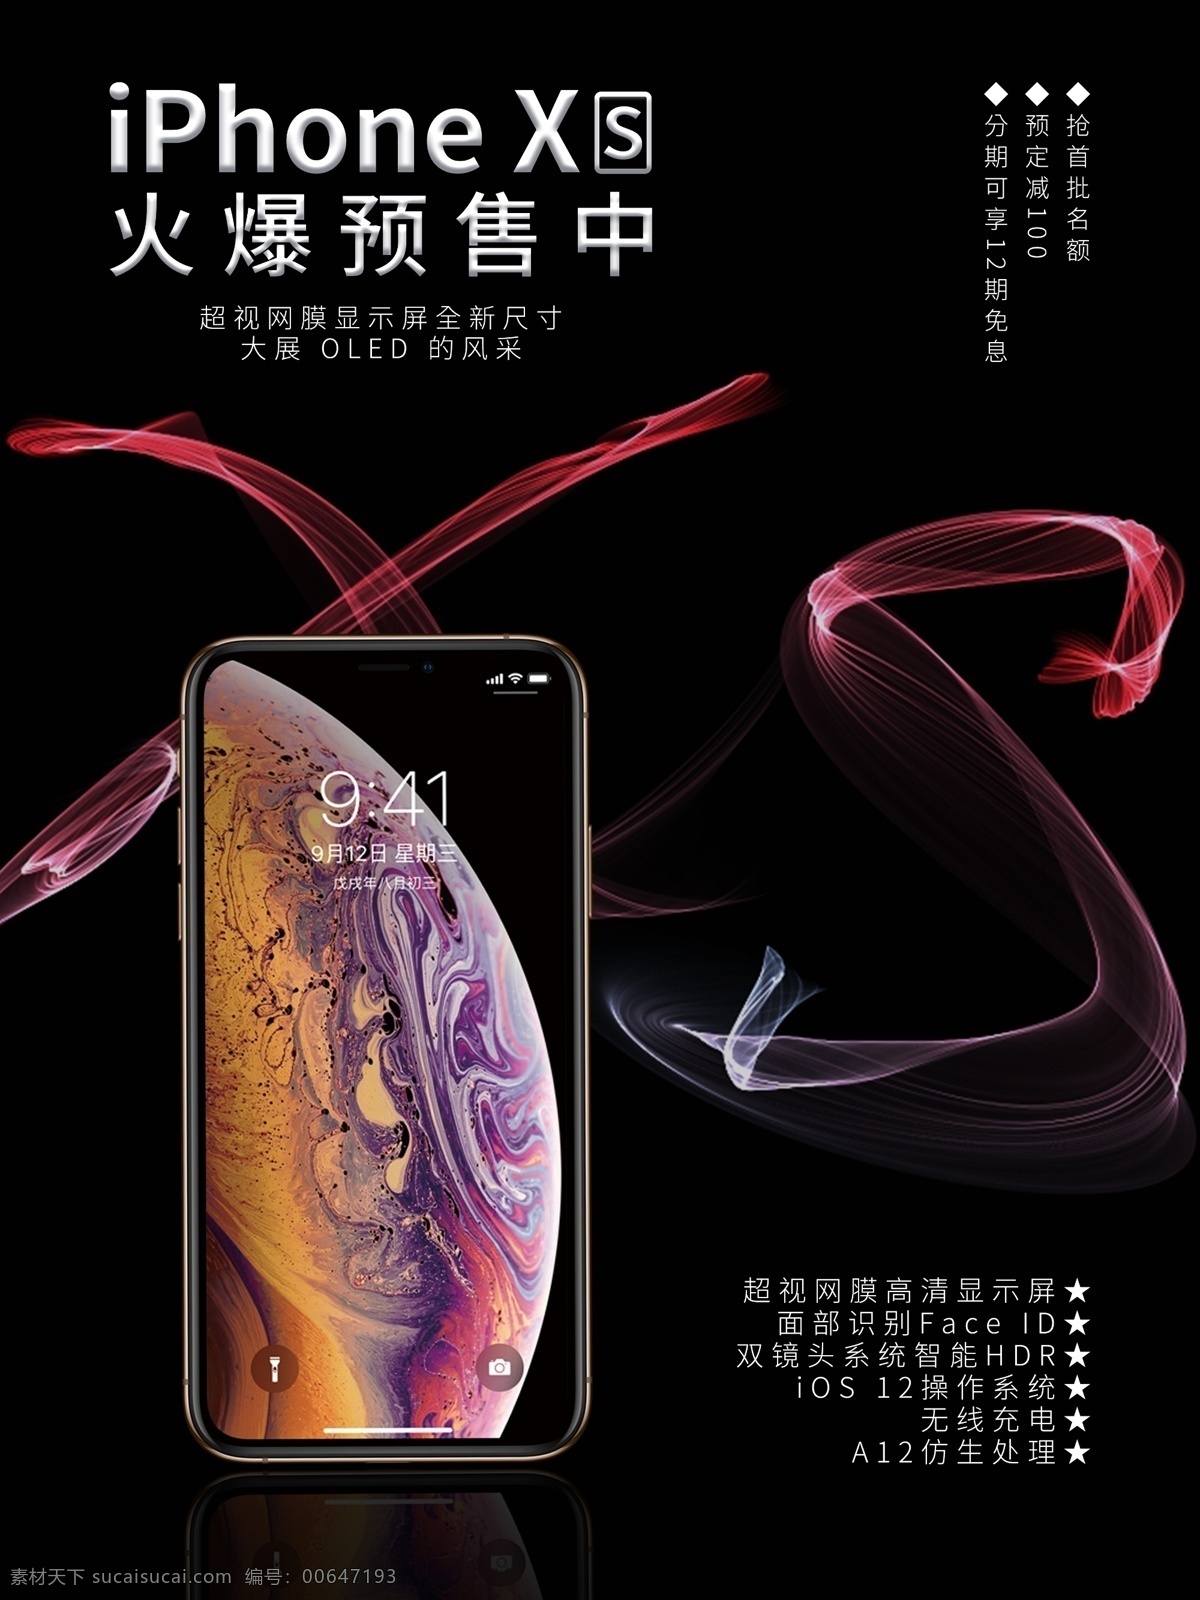 苹果 iphonexs 海报 预售 促销 预定 黑色 iphone 科技 xs